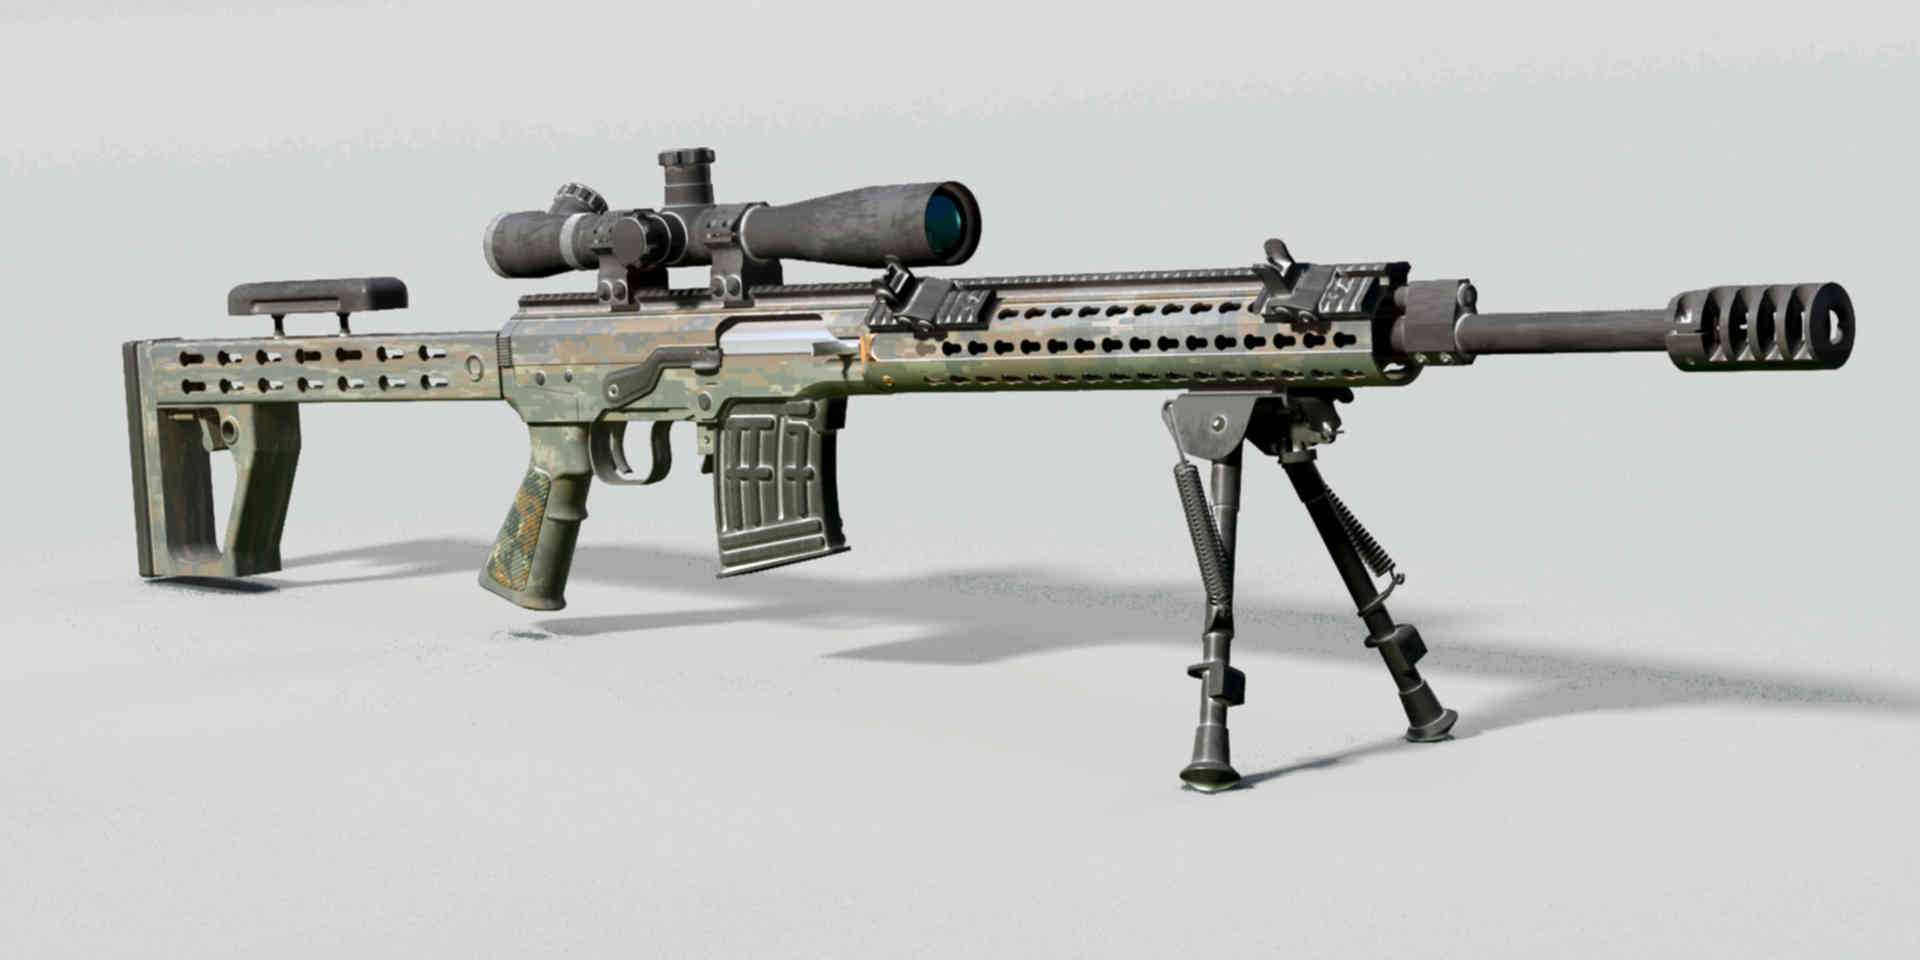 Свд м. Снайперская винтовка СВДМ. Снайперская винтовка СВДМ-2. СВД М винтовка СВДМ 2. Erma SR-100 снайперская винтовка.